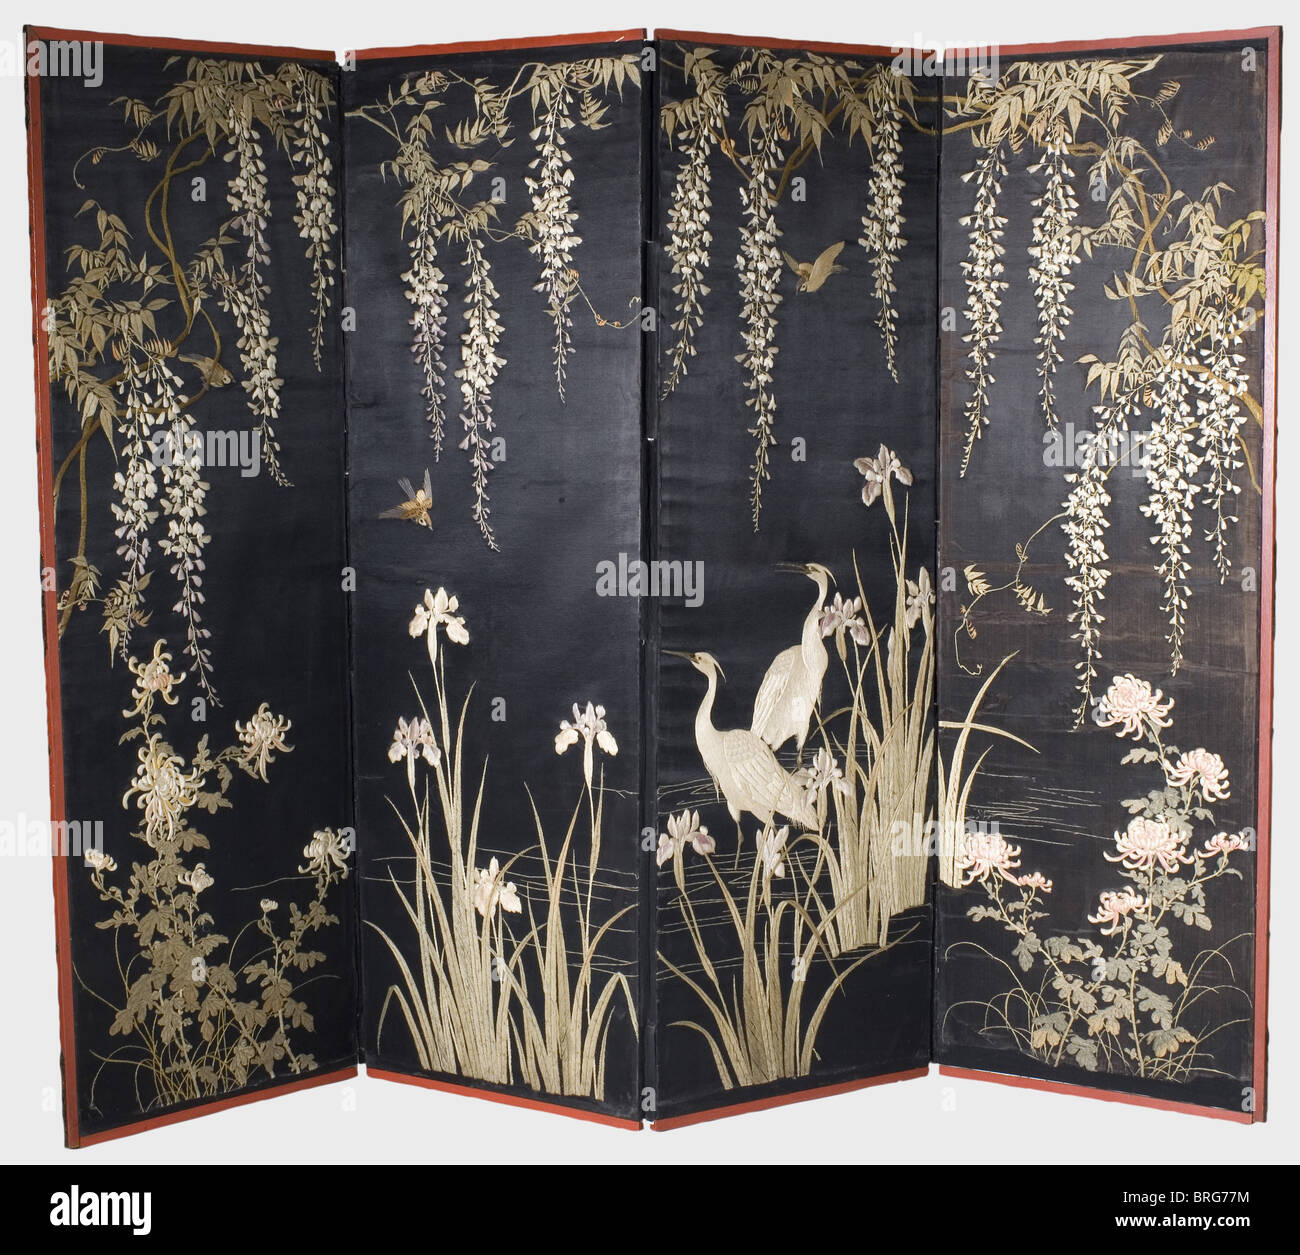 Un écran de pliage japonais (byobu), Meiji période quatre-panneau écran de pliage, les panneaux couverts de soie d'atlas noire. Représentation brodée des moineaux entre les vignes de wisteria. Dans les pivoines de premier plan, iris en fleur et deux hérons de soie. Cadre en treillis en bois laqué rouge, bords avec raccords en shakudo ouverts. Dos recouvert de papier peint, décoré de mons rouges (crème familiale). Hauteur 171 cm,largeur 232 cm.,historique,19e siècle,japonais,asiatique,Asie,extrême-Orient,objet,objets,photos,découpe,découpe,découpes,exotiques,droits supplémentaires-Clearences-non disponible Banque D'Images